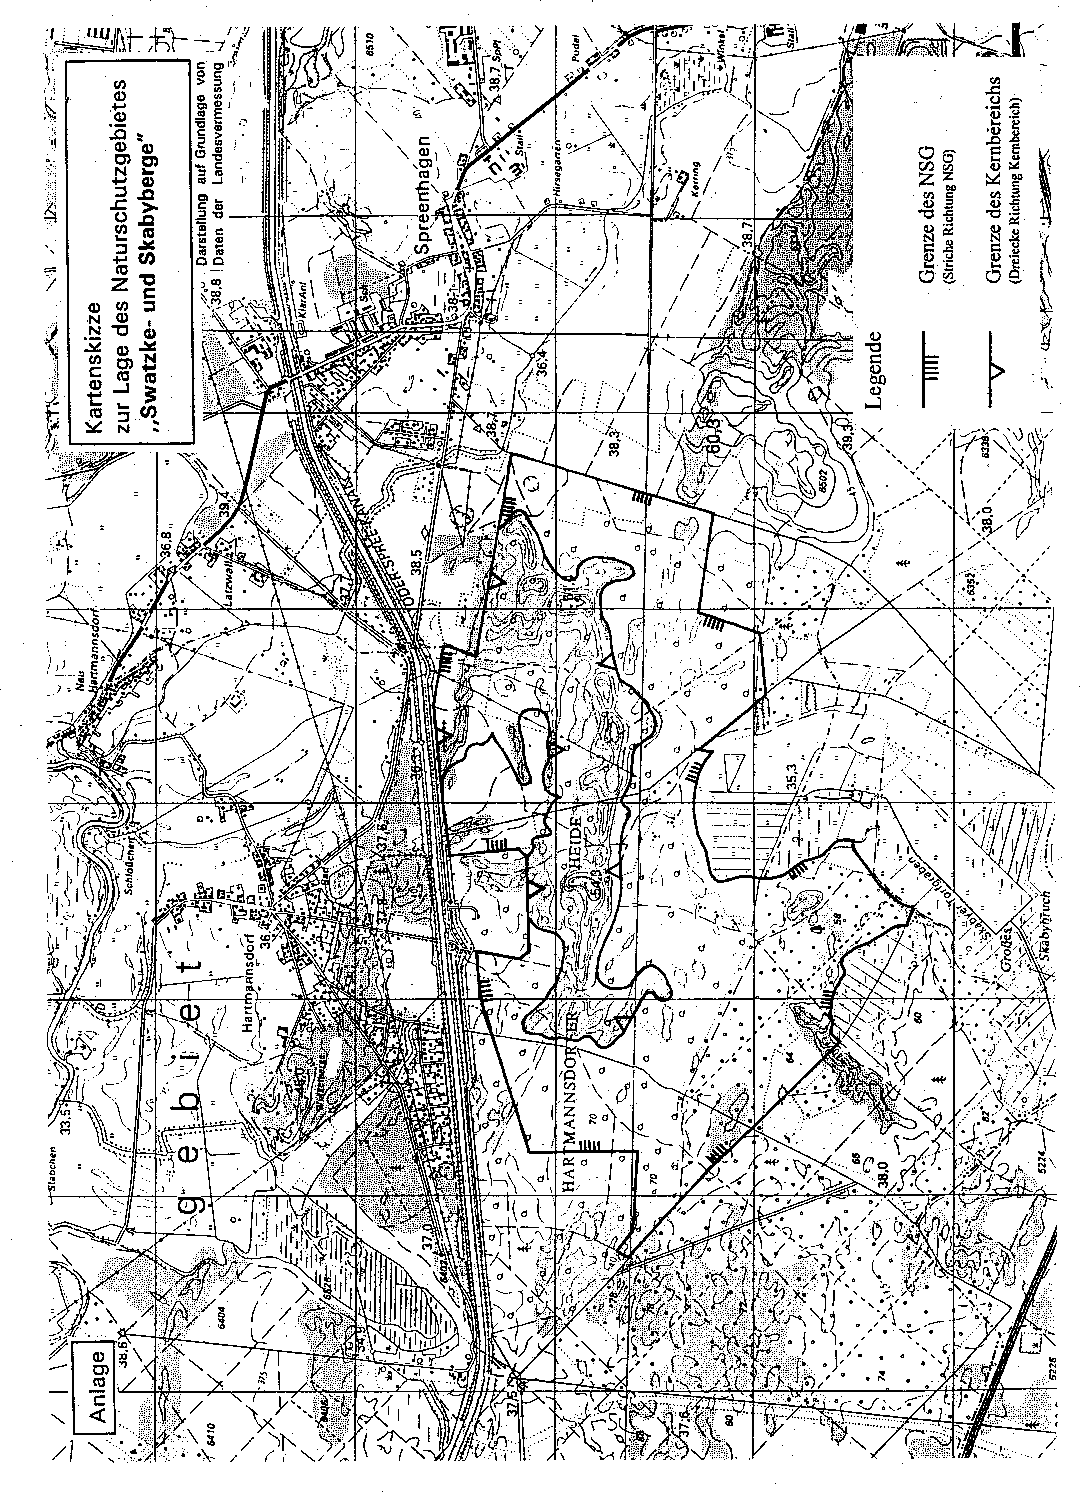 Kartenskizze zur Lage des Naturschutzgebietes "Swatzke- und Skabyberge" - Karte 1 -